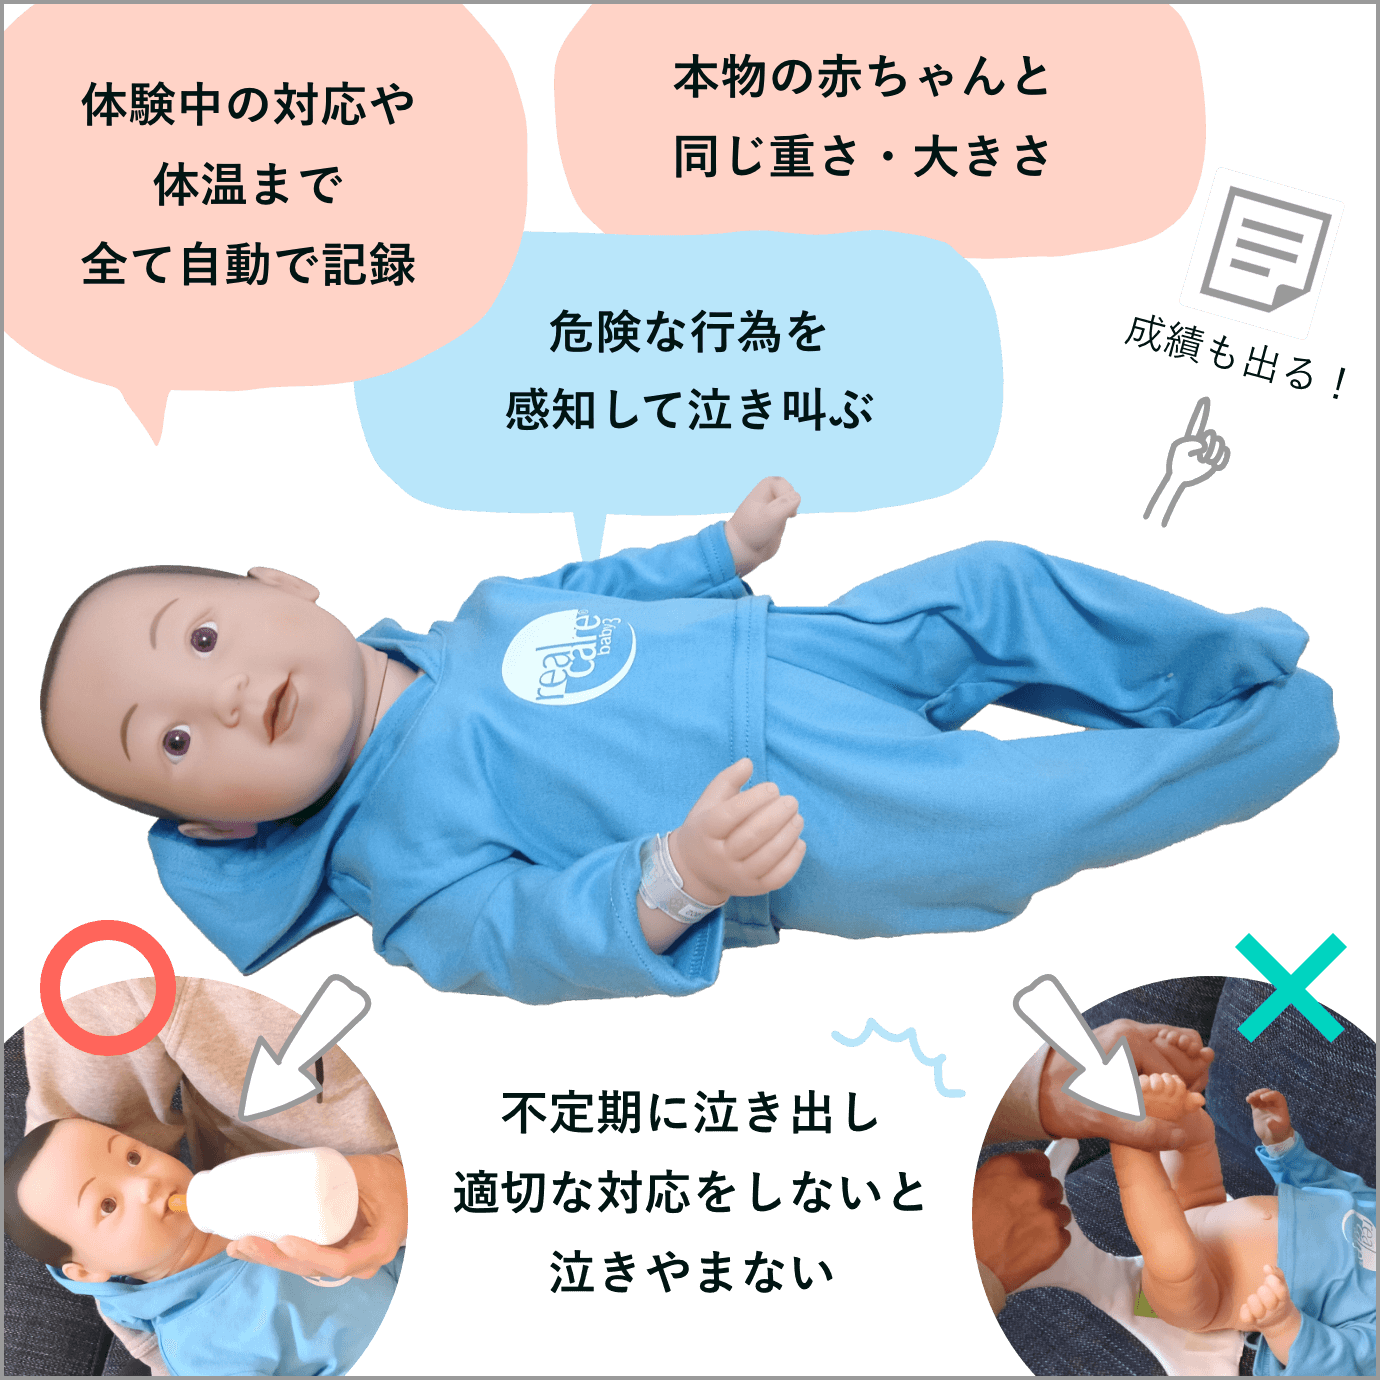 赤ちゃんの機能の紹介画像